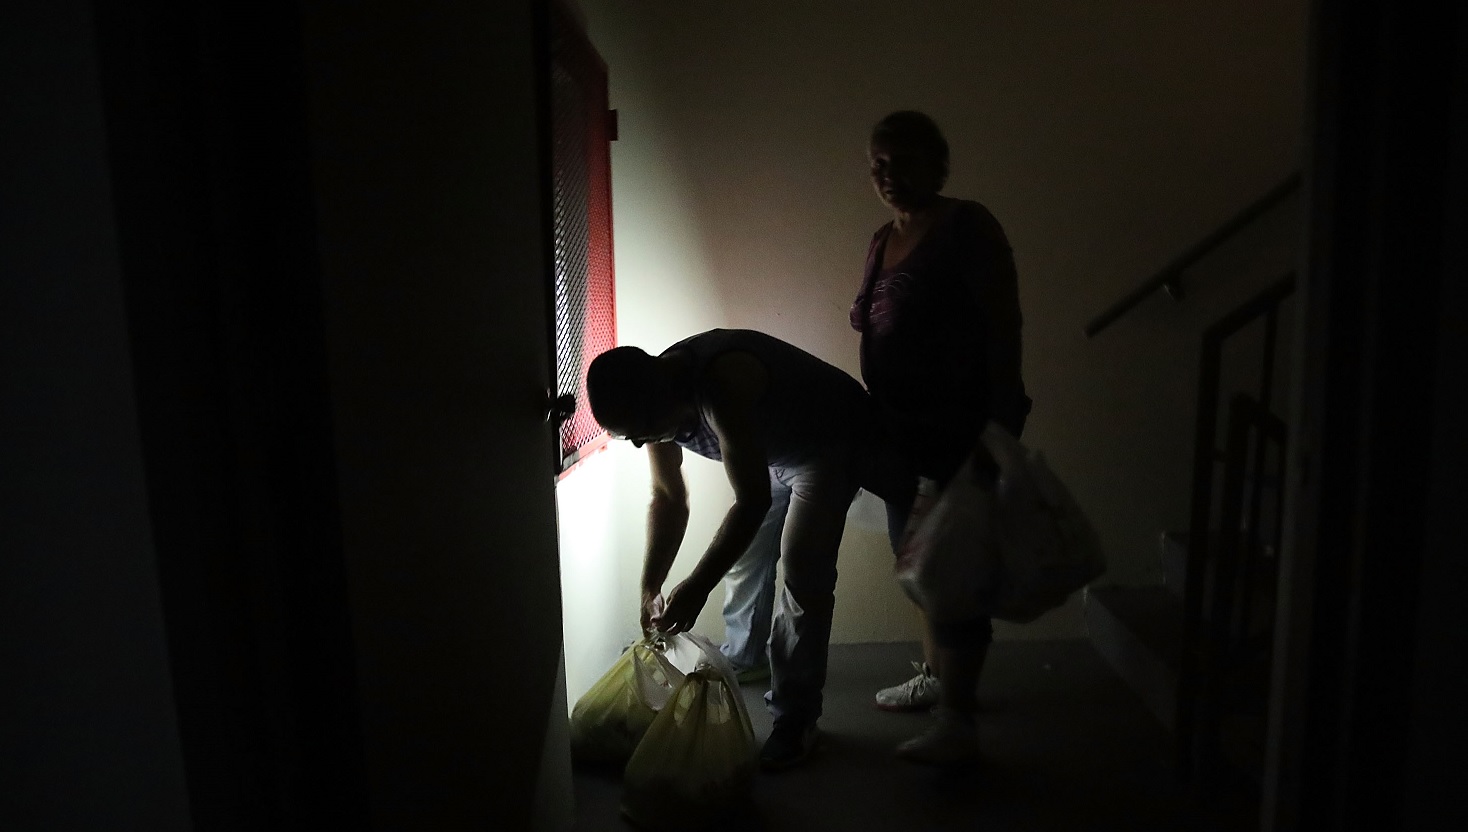 Puerto Rico sufre apagón; luz se restablecería entre 24 a 36 horas